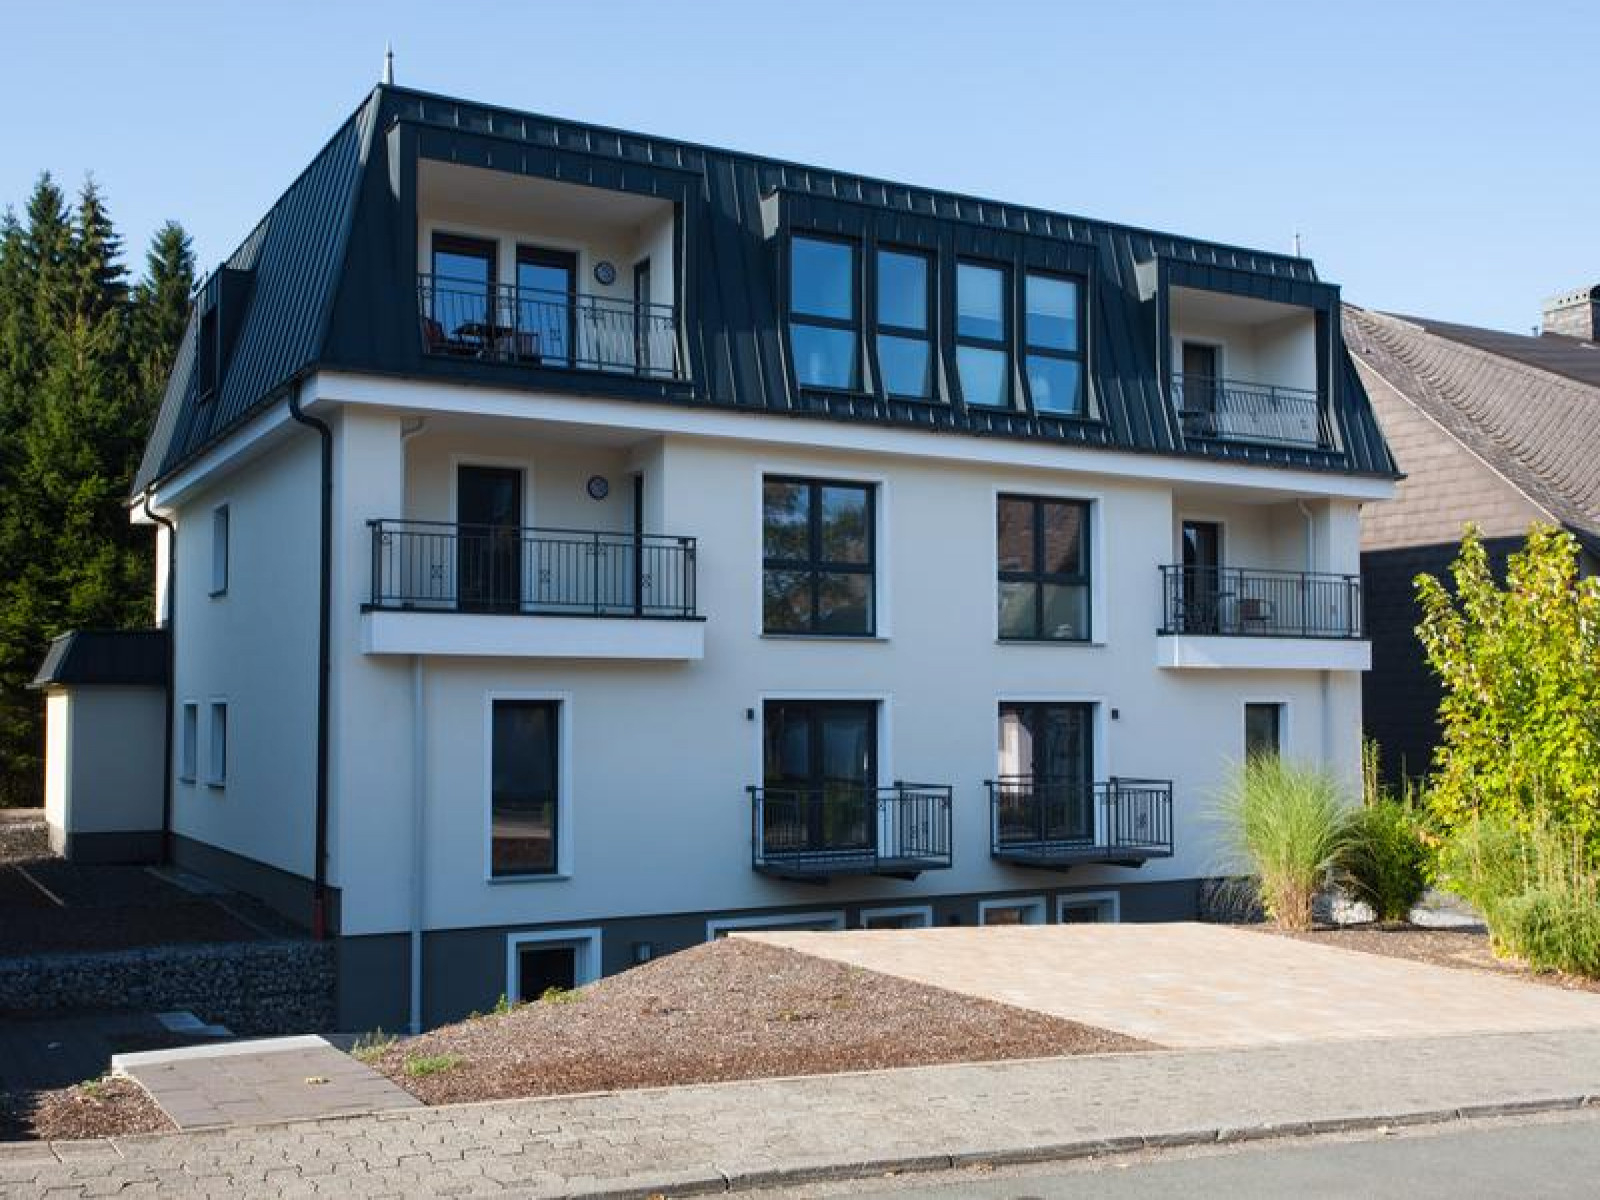 Heerlijkehuisjes.nl Zeer luxe 4 persoons vakantieappartement in Winterberg. - Duitsland - Europa - Winterberg